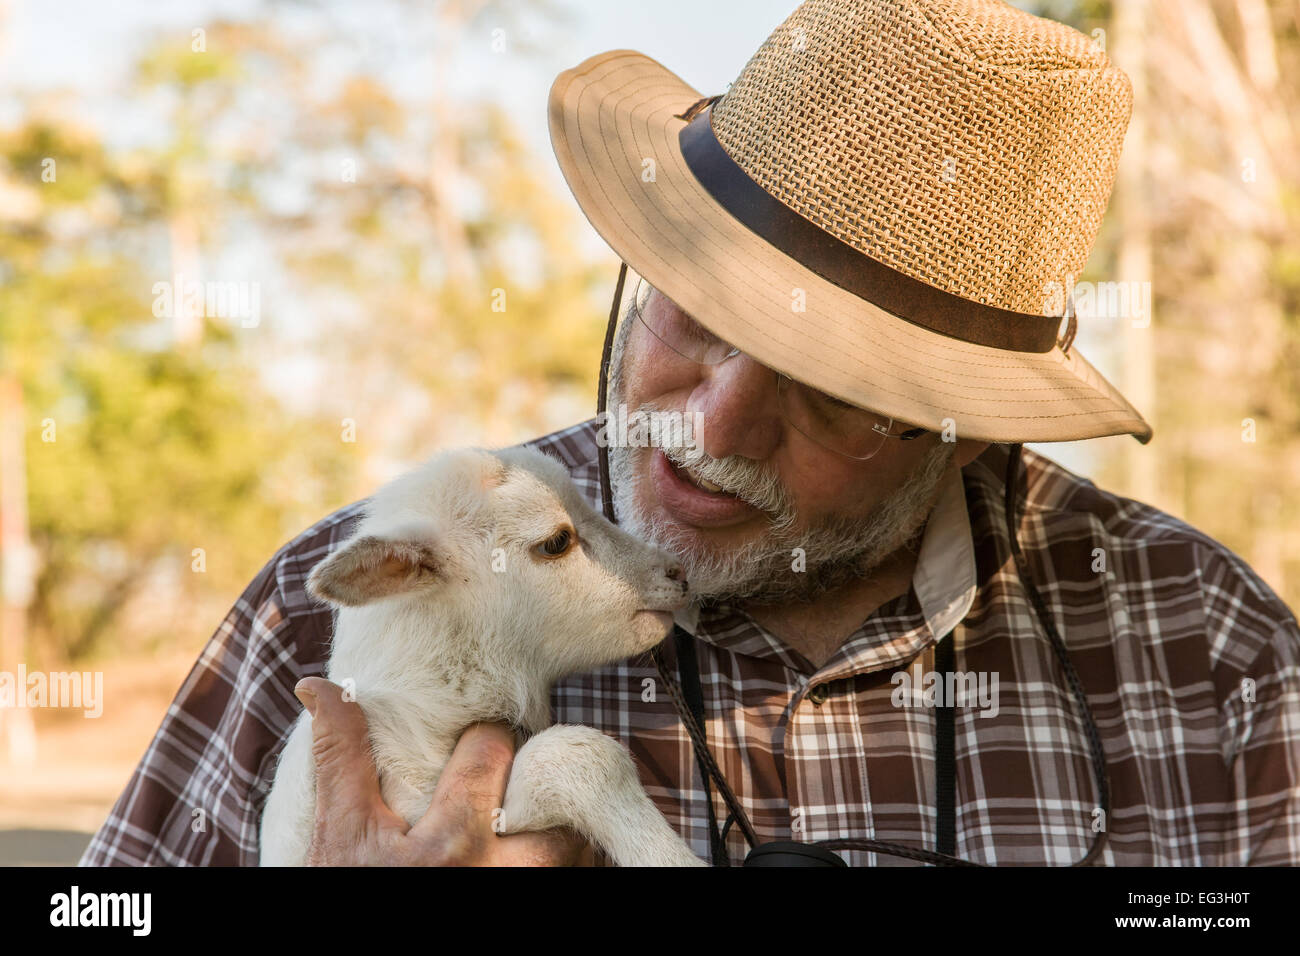 Man holding et parlant doucement à un agneau dans une ferme de Parc National Palo Verde, Costa Rica Banque D'Images